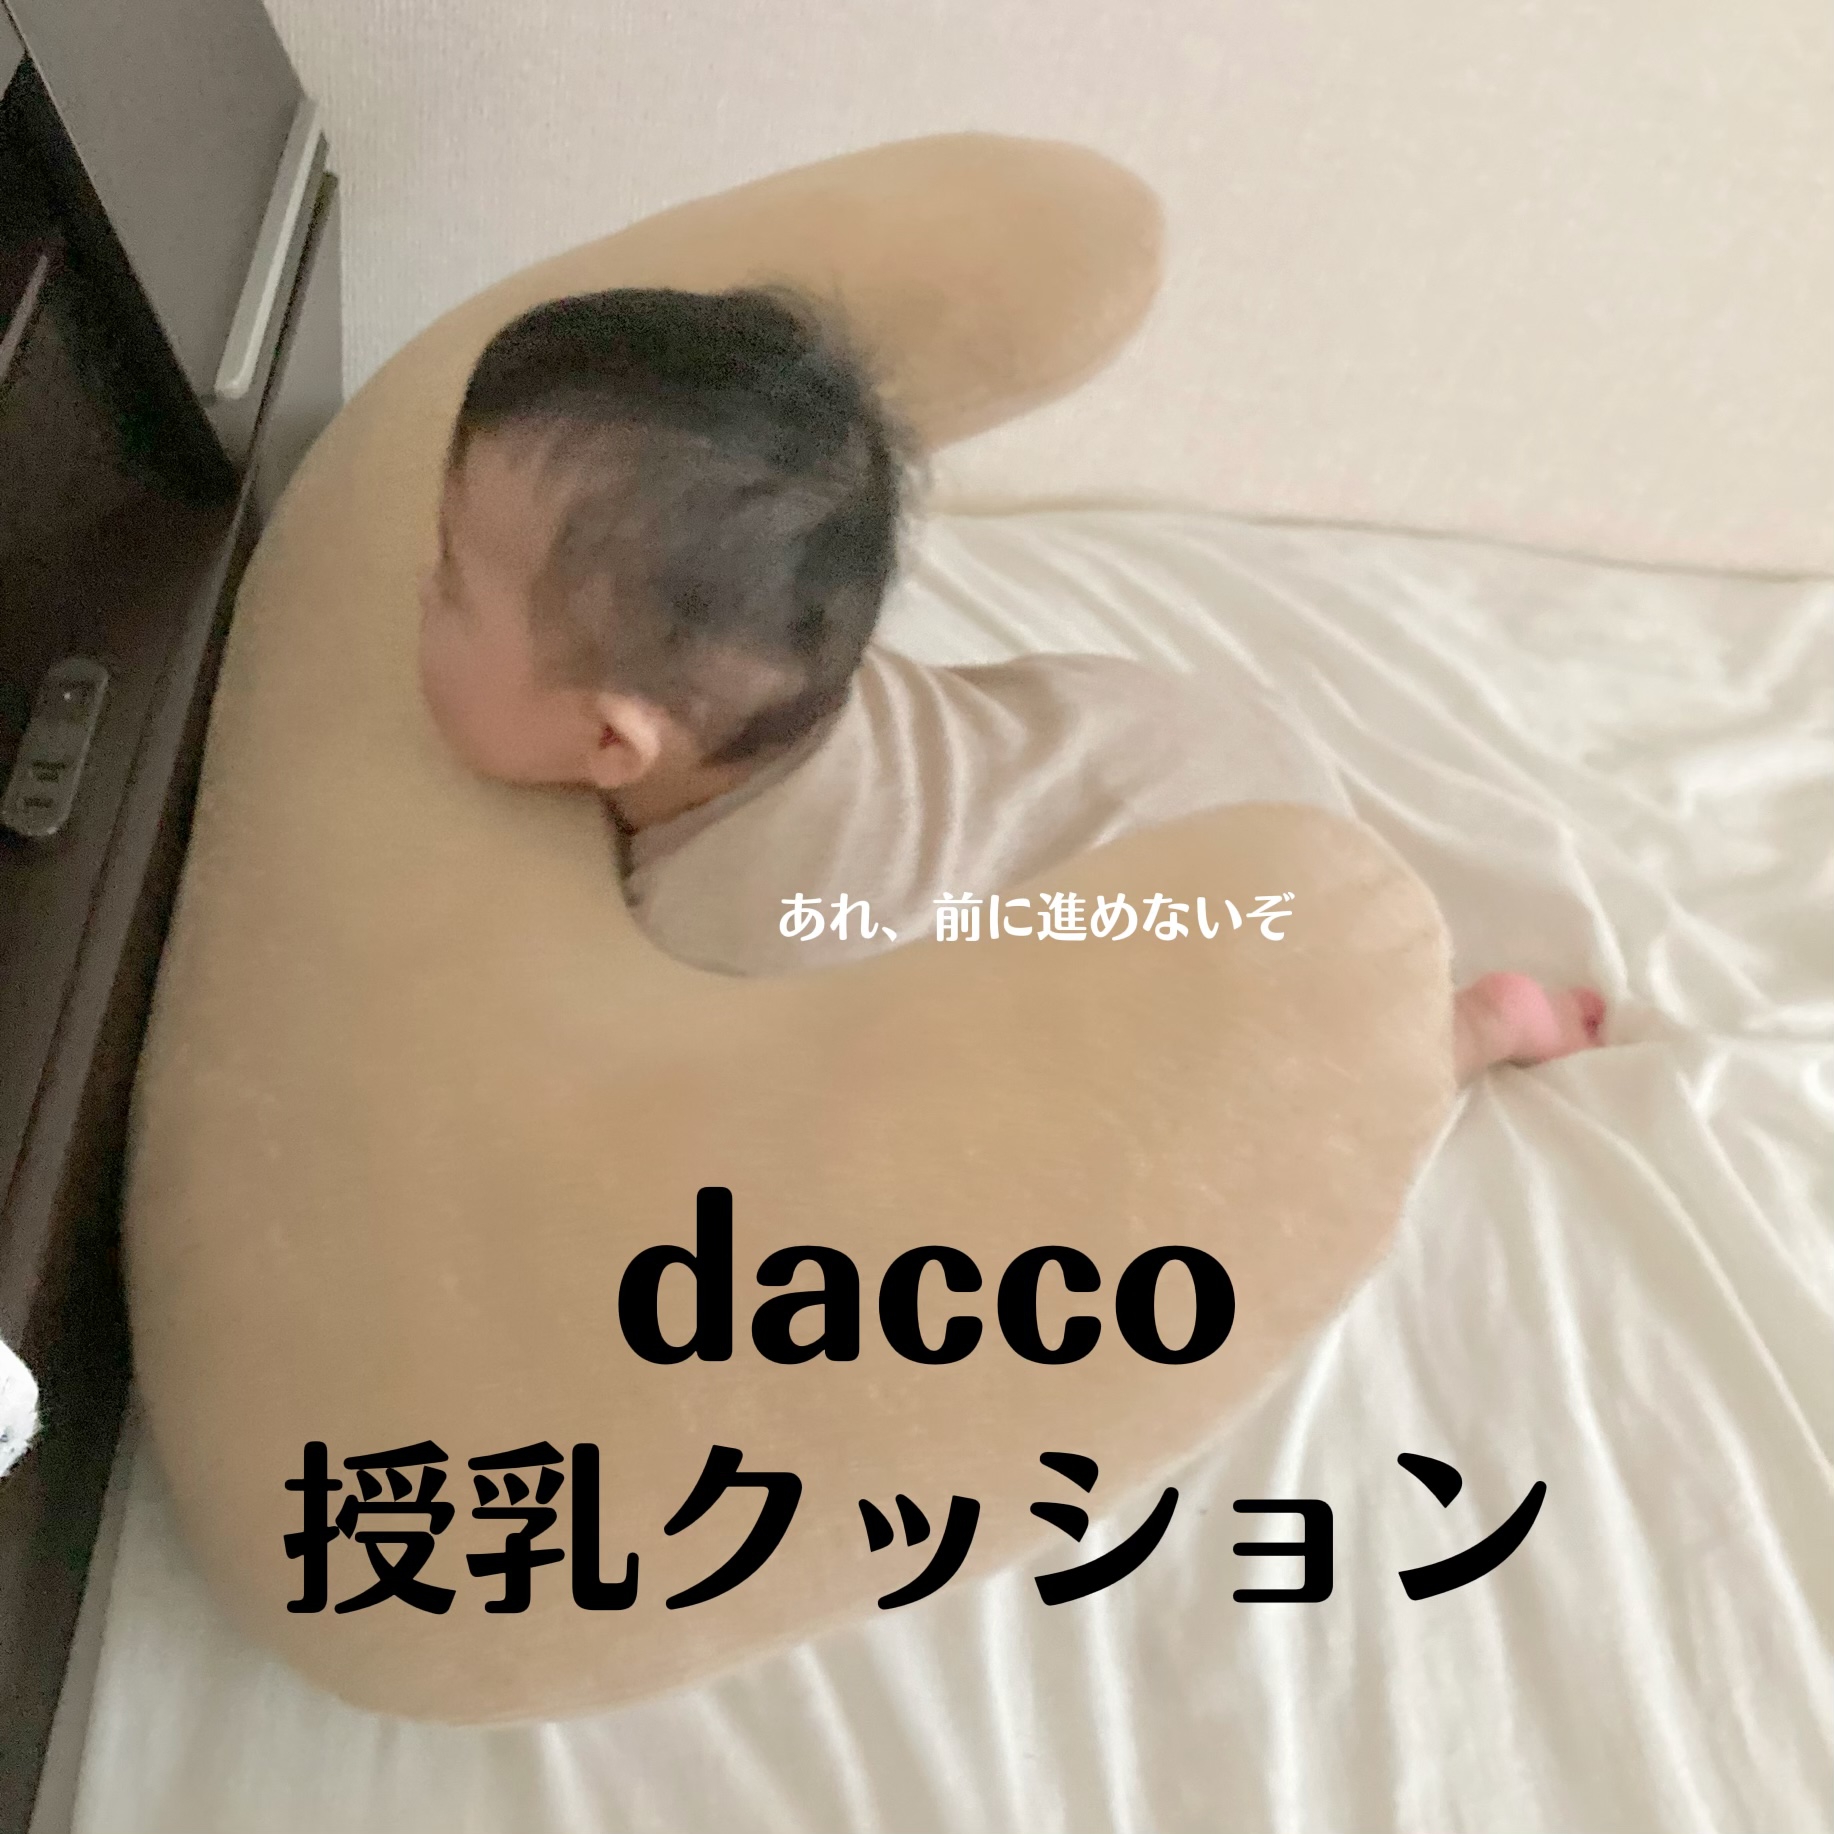 dacco(ダッコ) 授乳用クッションの良い点・メリットに関するこらさんの口コミ画像1